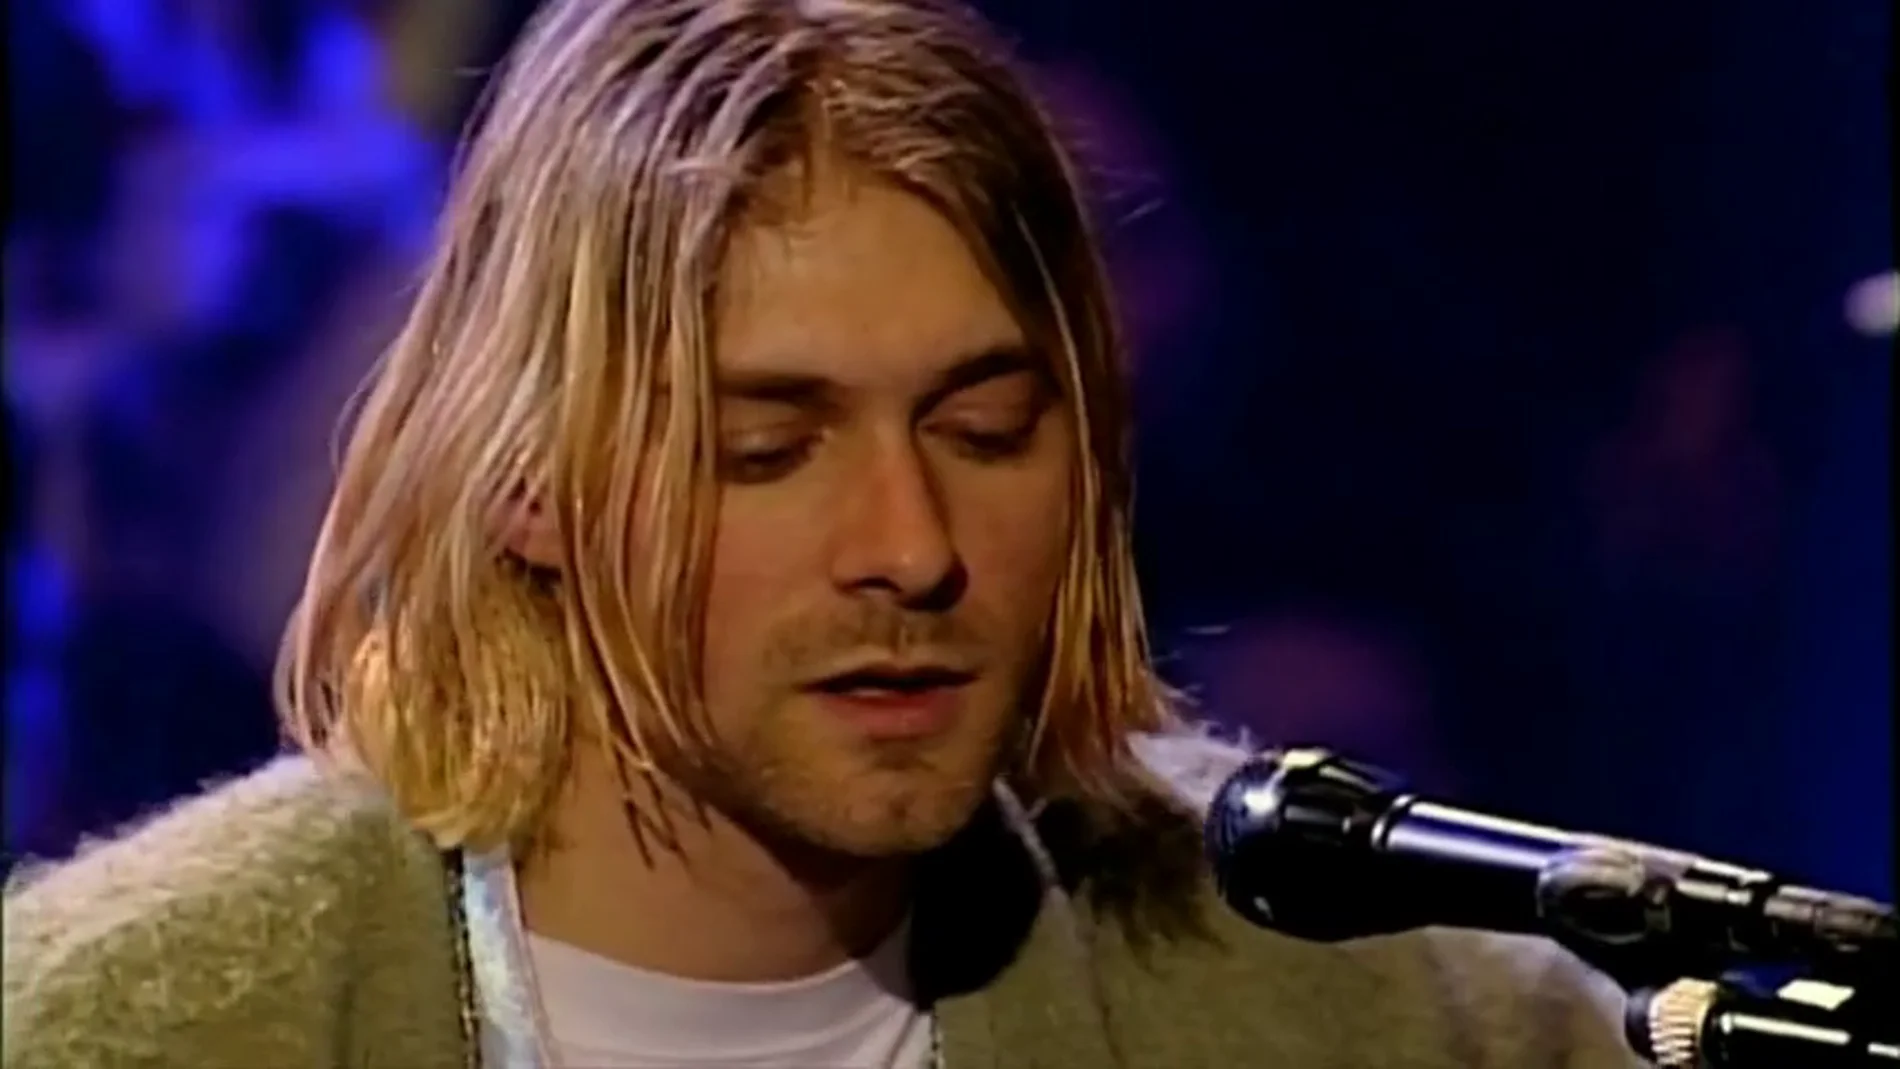 Se cumplen 25 años del suicidio de Kurt Cobain, el chico que odiaba la persona que había conseguido ser